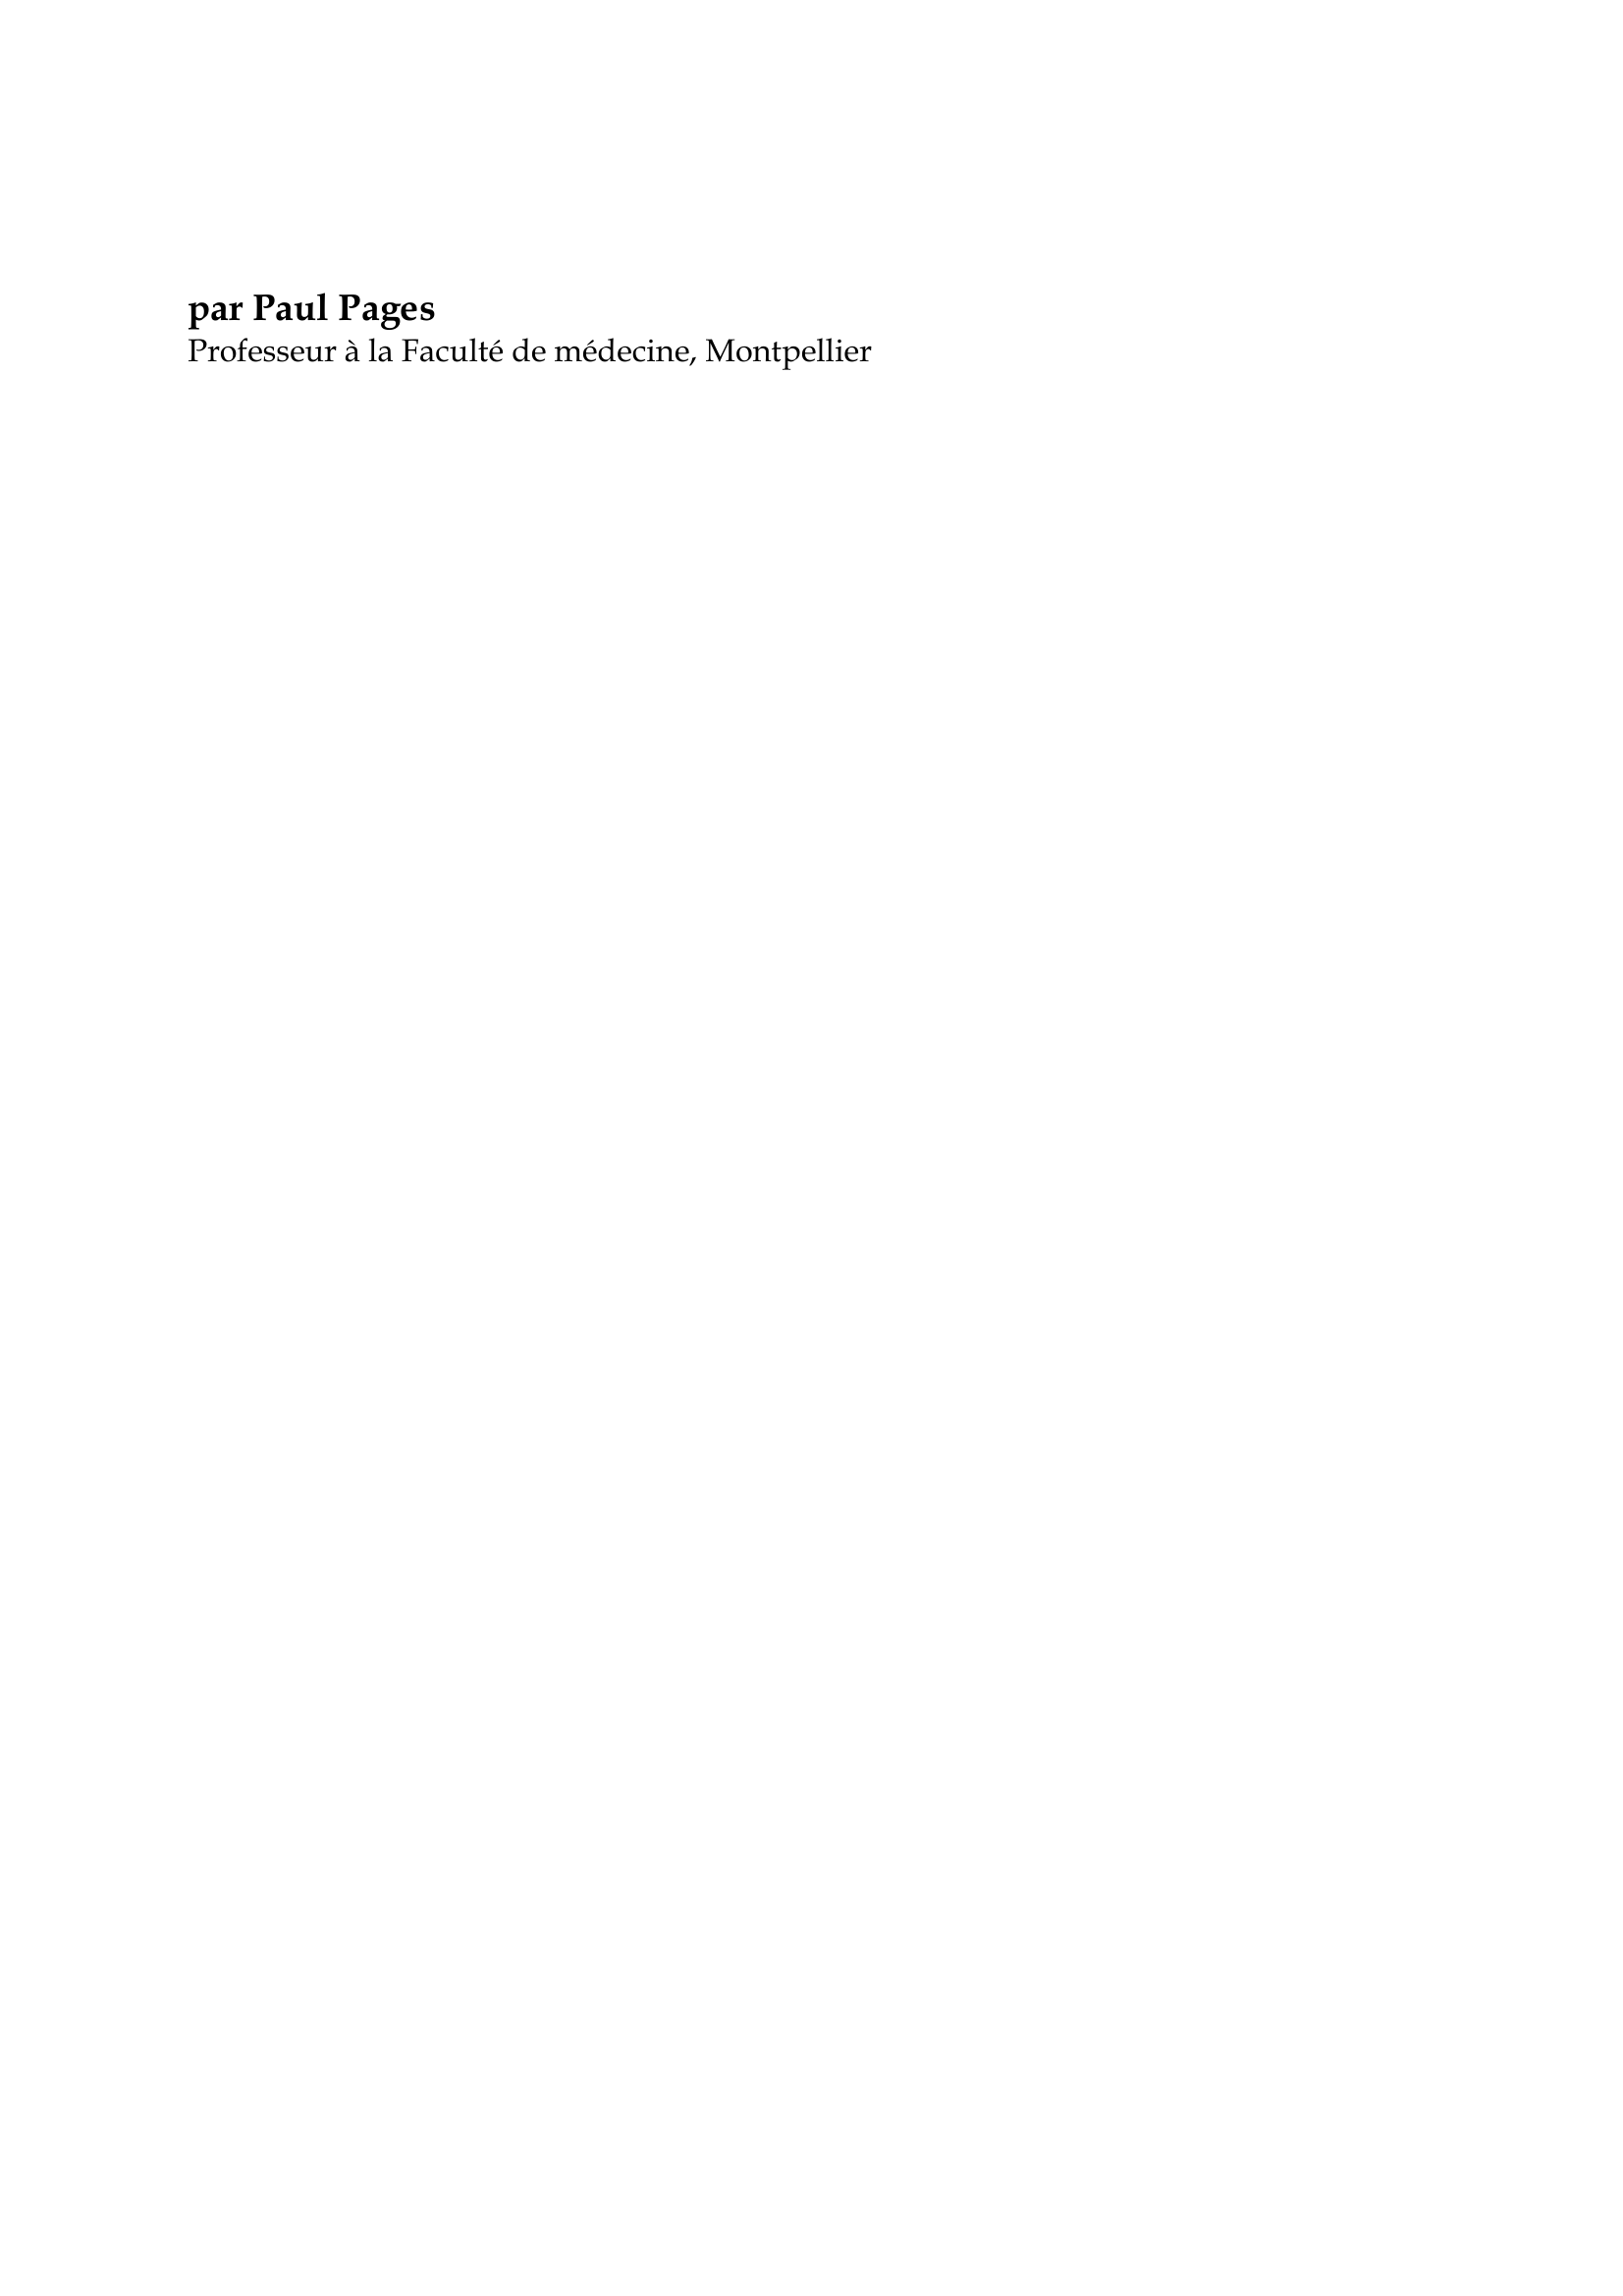 Prévisualisation du document Avicenne

par Paul Pages
Professeur à la Faculté de médecine, Montpellier

Avicenne (Ibn